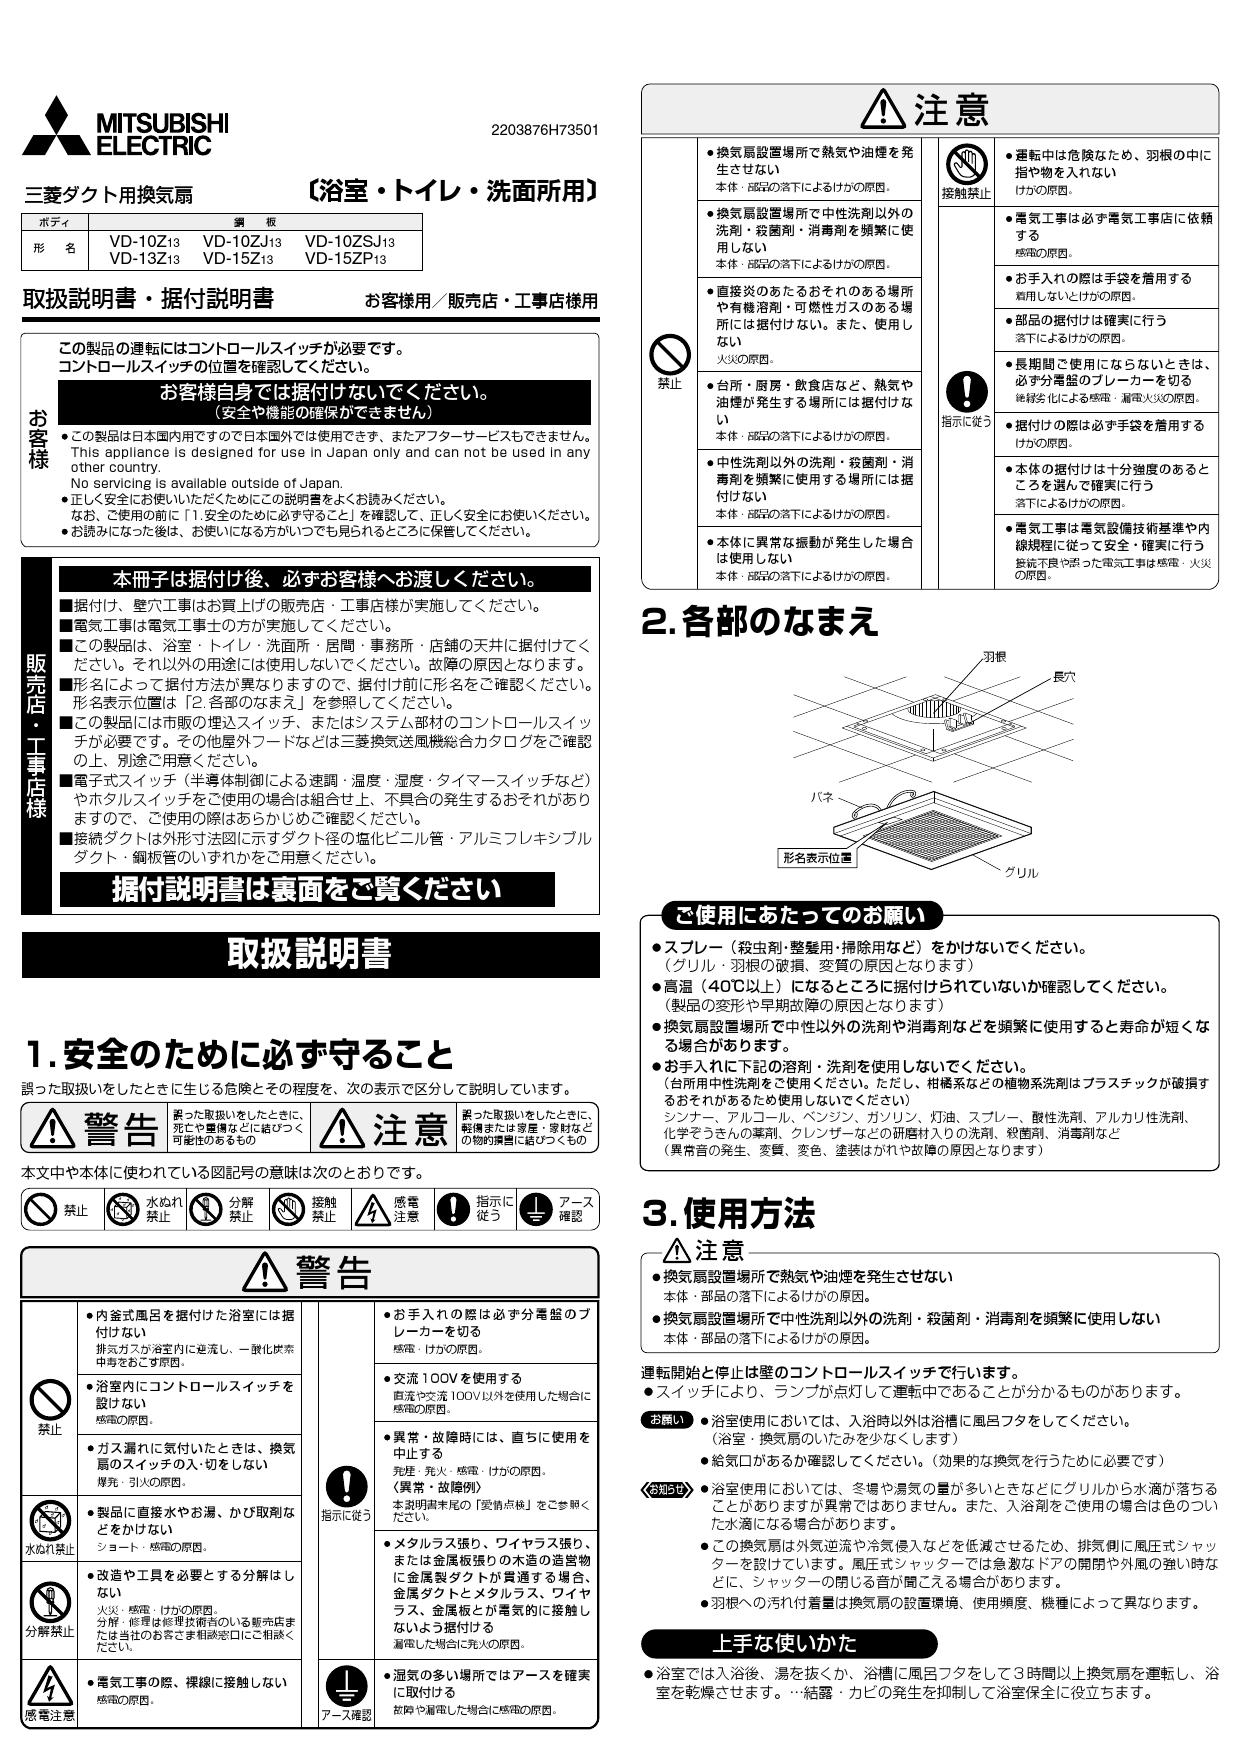 三菱電機 MITSUBISHI ELECTRIC 換気扇 V-13BS7 サニタリー用 省エネ